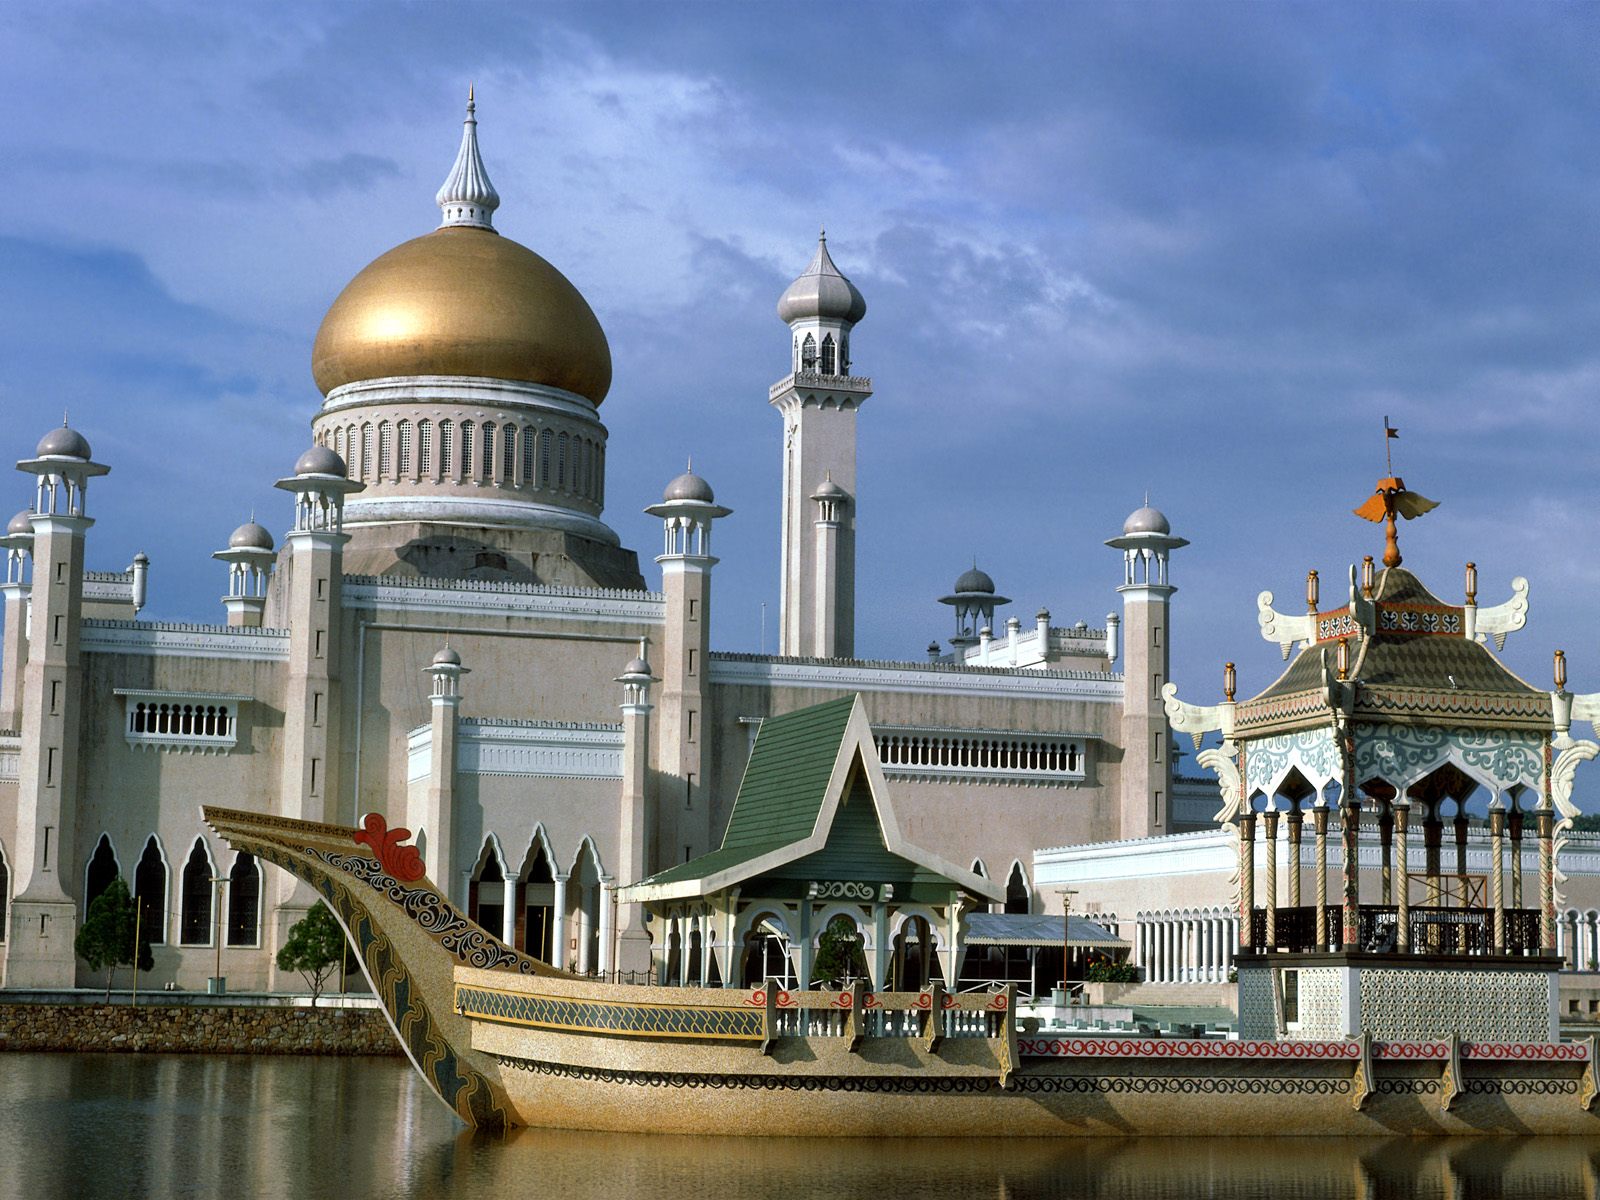  Bandar Seri Begawan, Brunei and Muara whores